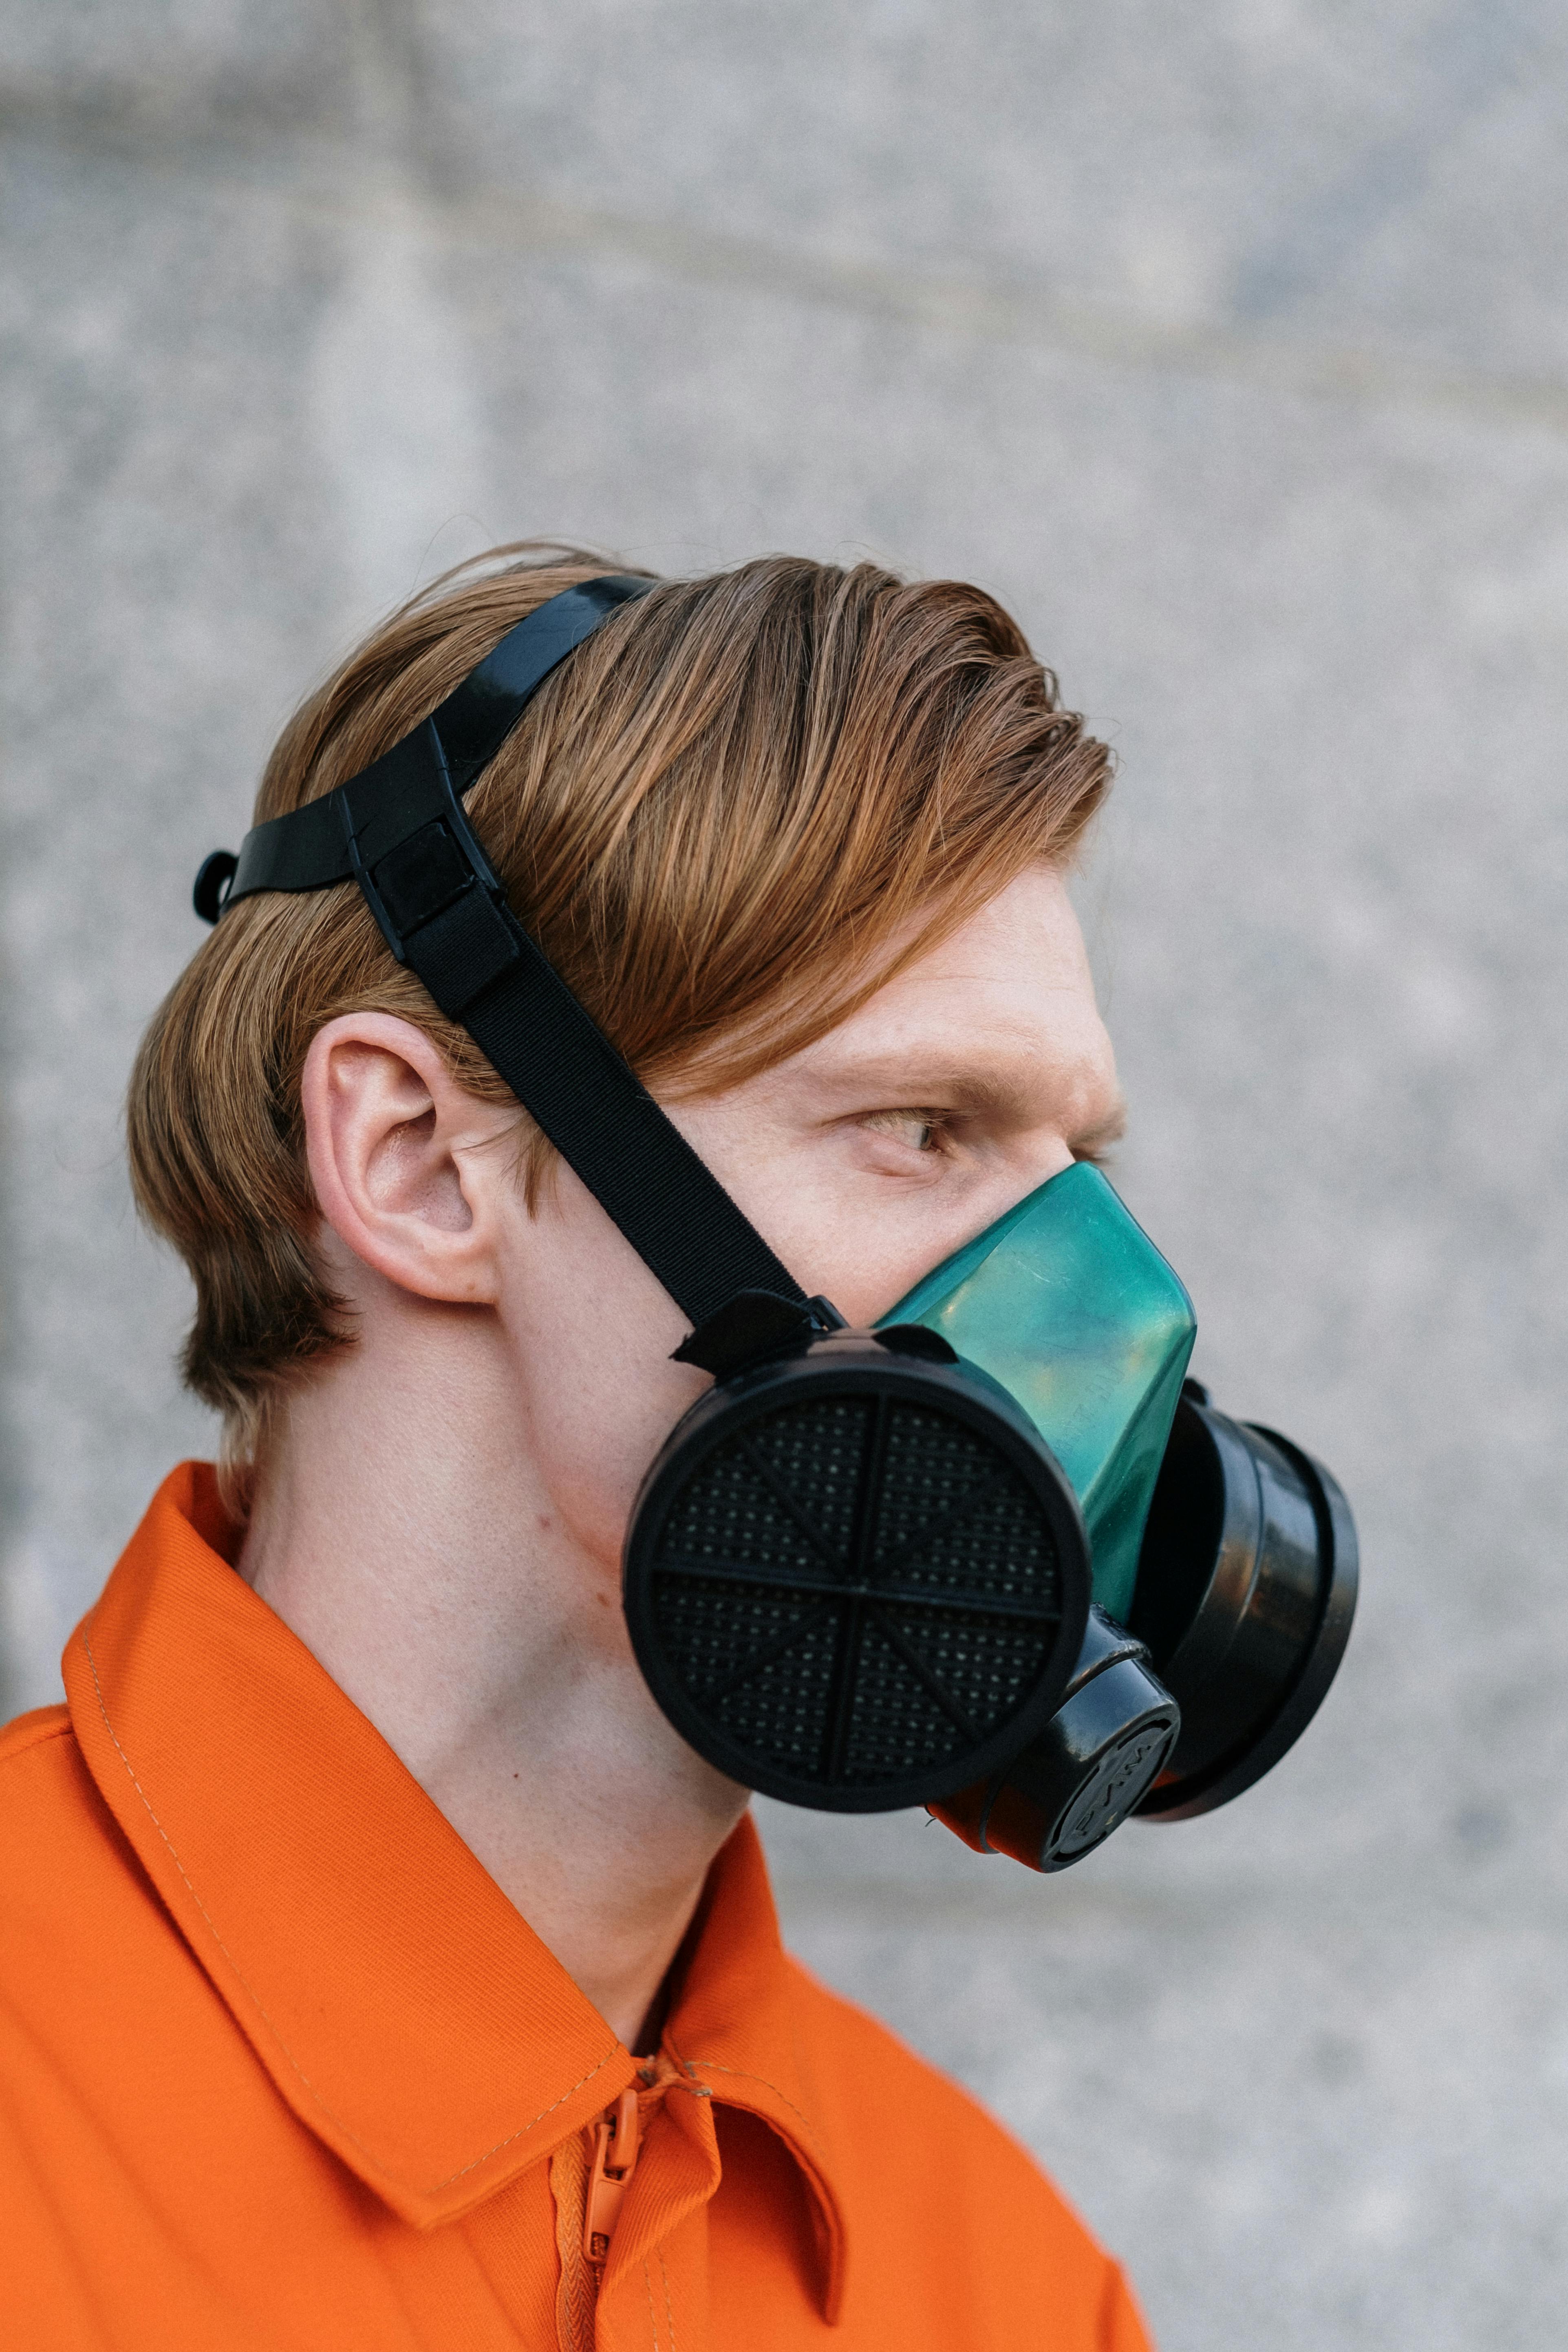 Gas mask man : 52 727 images, photos de stock, objets 3D et images